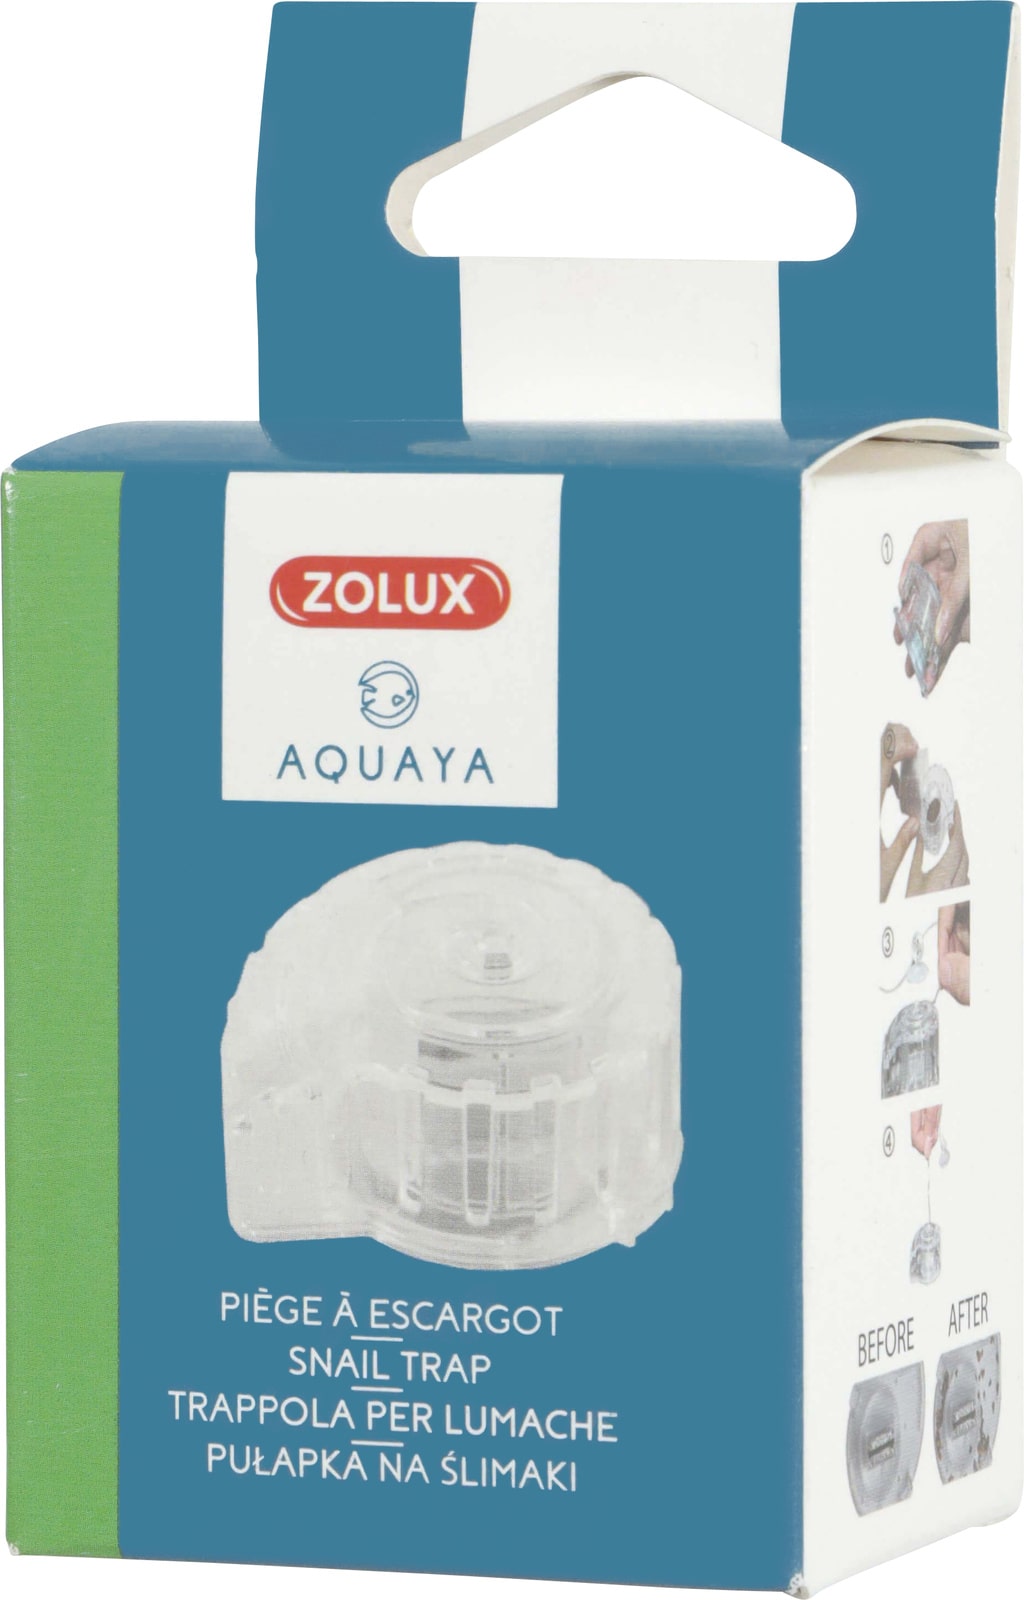 ZOLUX Aquaya Piège à escargots très efficace pour aquarium